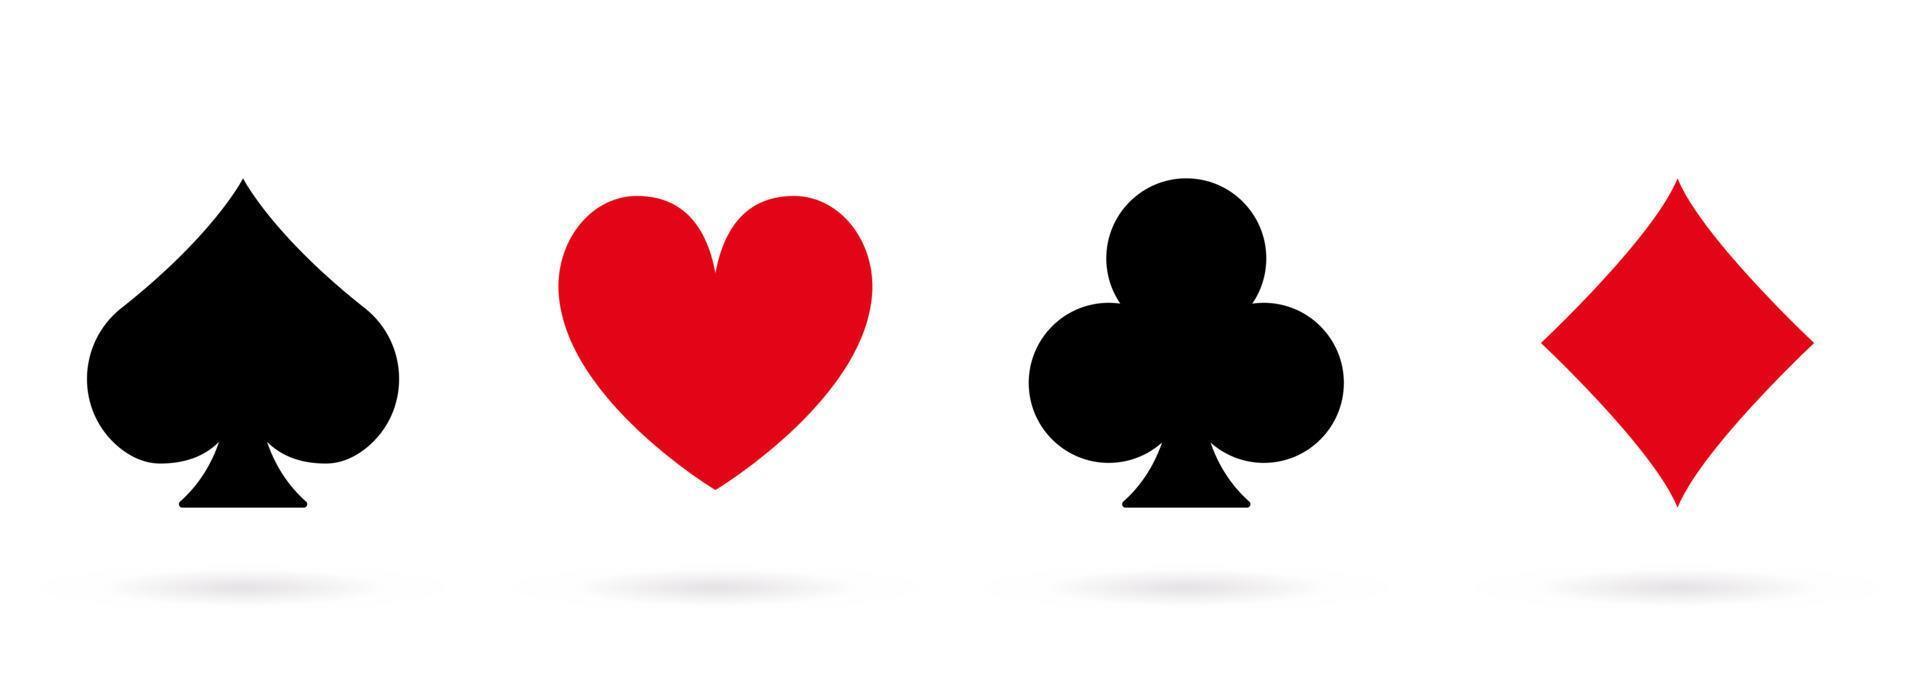 icono de silueta negra de espada de traje de tarjeta. símbolo plano del juego de casino. juego de juego de póquer establece pictograma de glifo. juego de black jack club en el símbolo de las vegas. carta de juego. ilustración vectorial aislada. vector